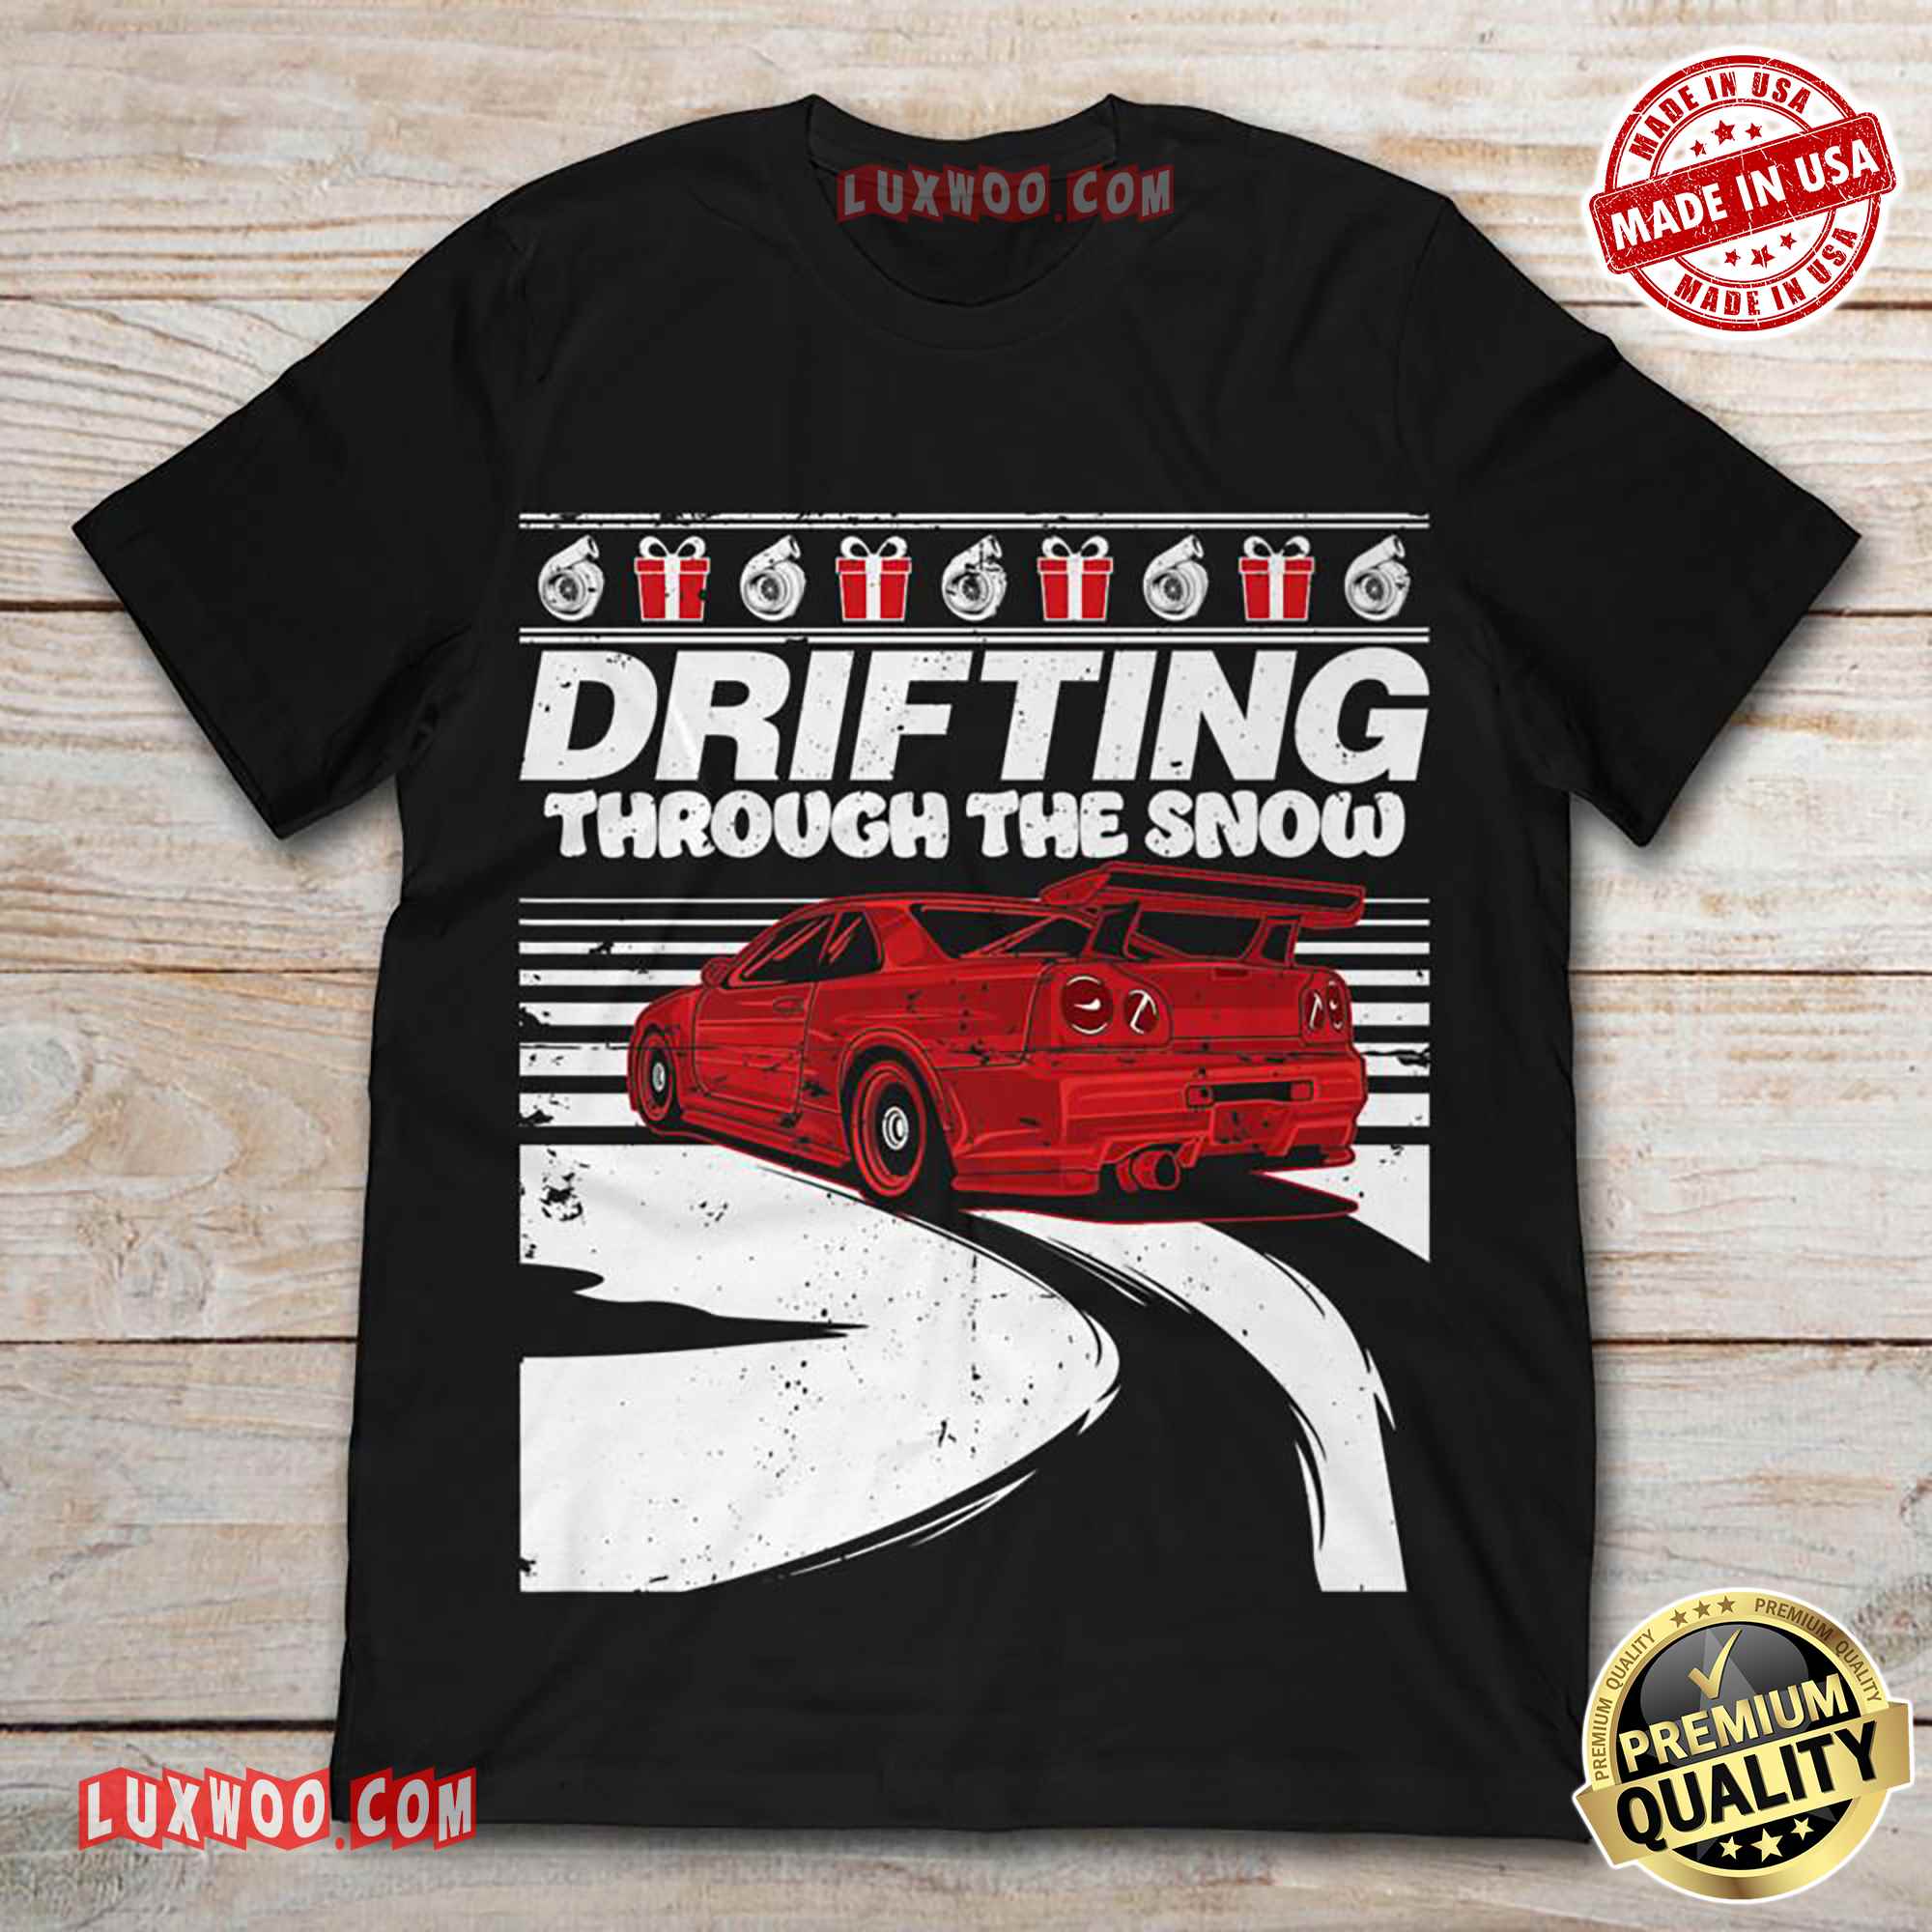 Drifting Through The Snow Car Racing Tee Shirt